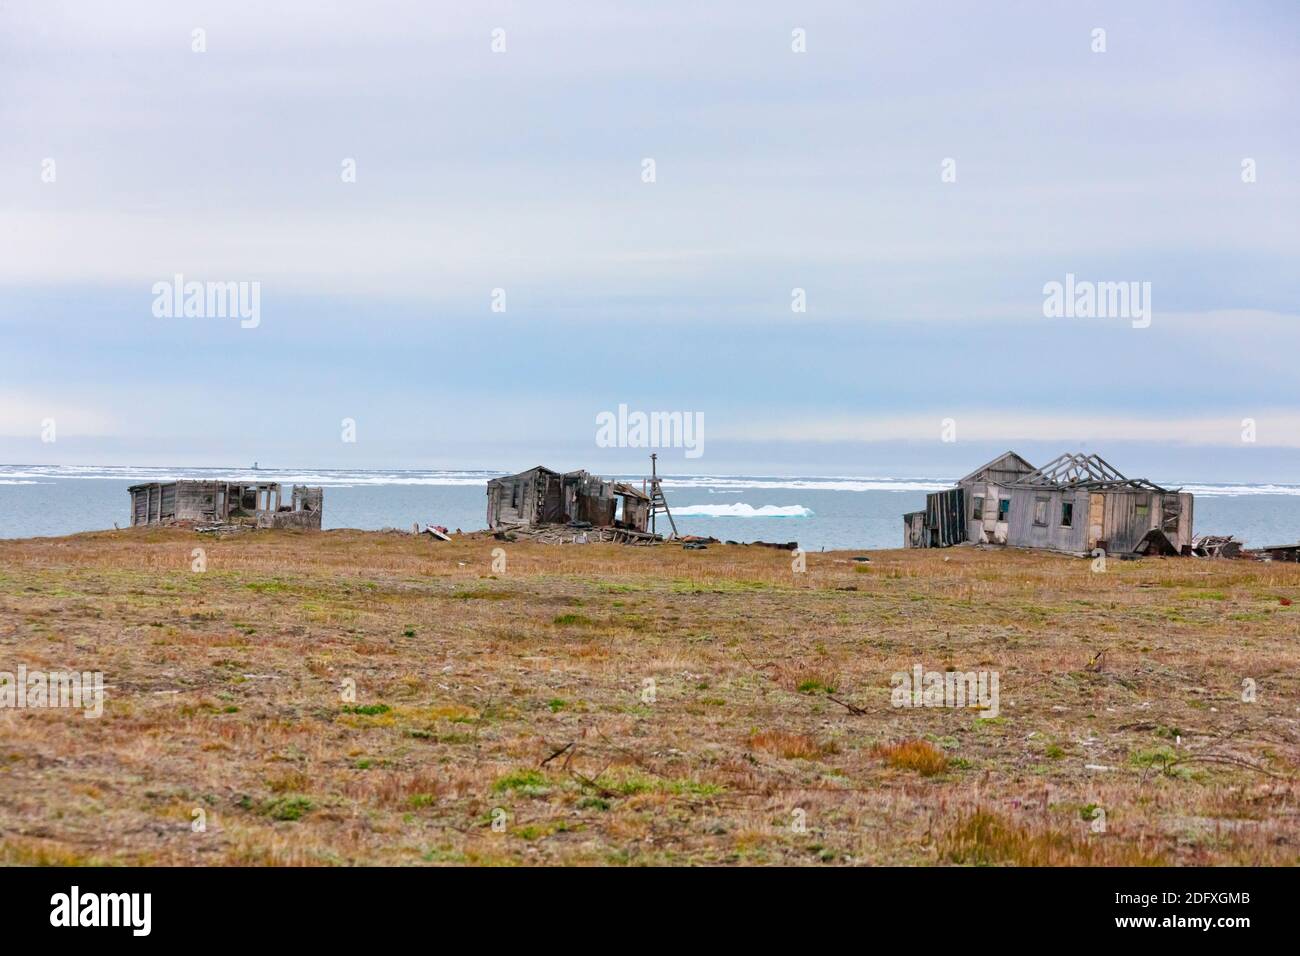 Station forestière sur l'île Wrangel en mer de Tchoukotka, Extrême-Orient russe Banque D'Images